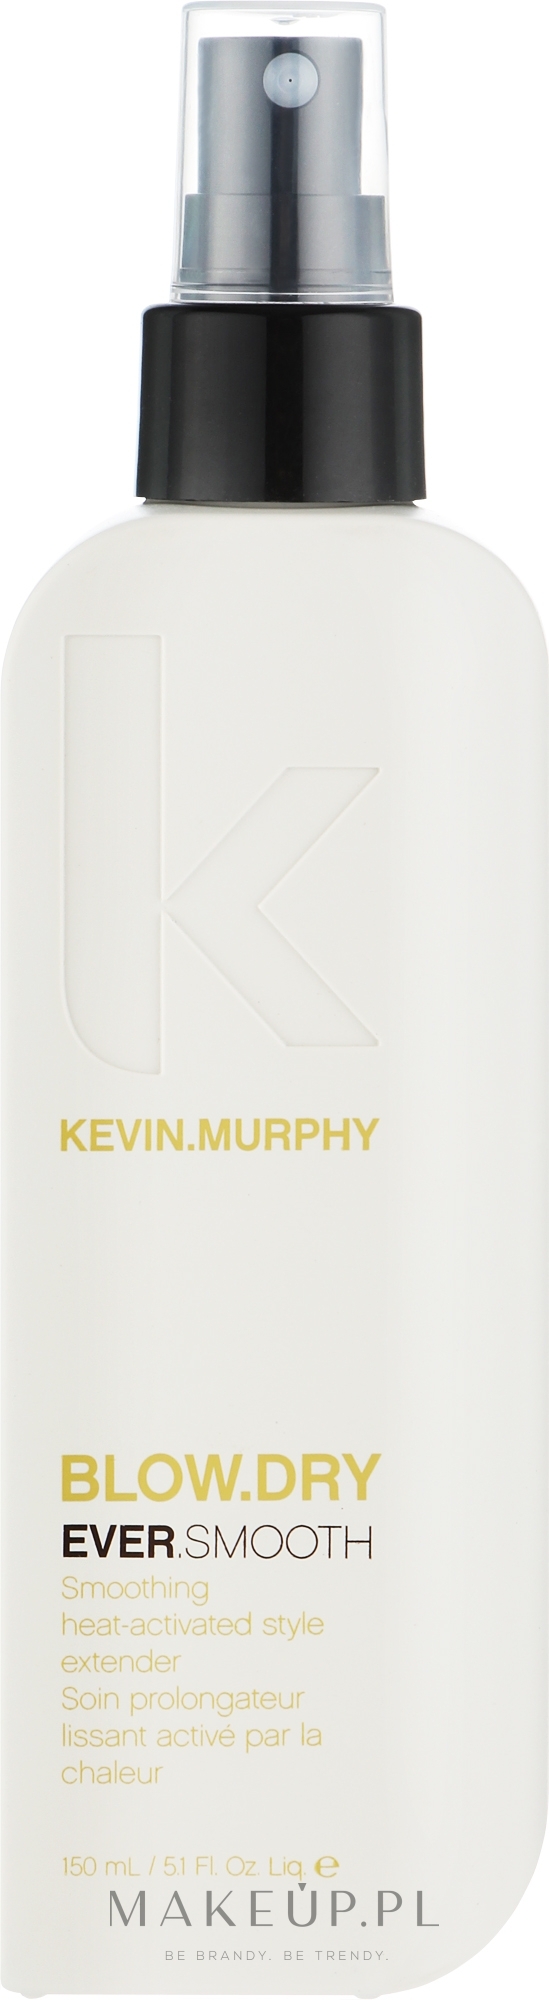 Termoaktywny lakier wygładzający do włosów - Kevin.Murphy Blow.Dry Ever.Smooth — Zdjęcie 150 ml